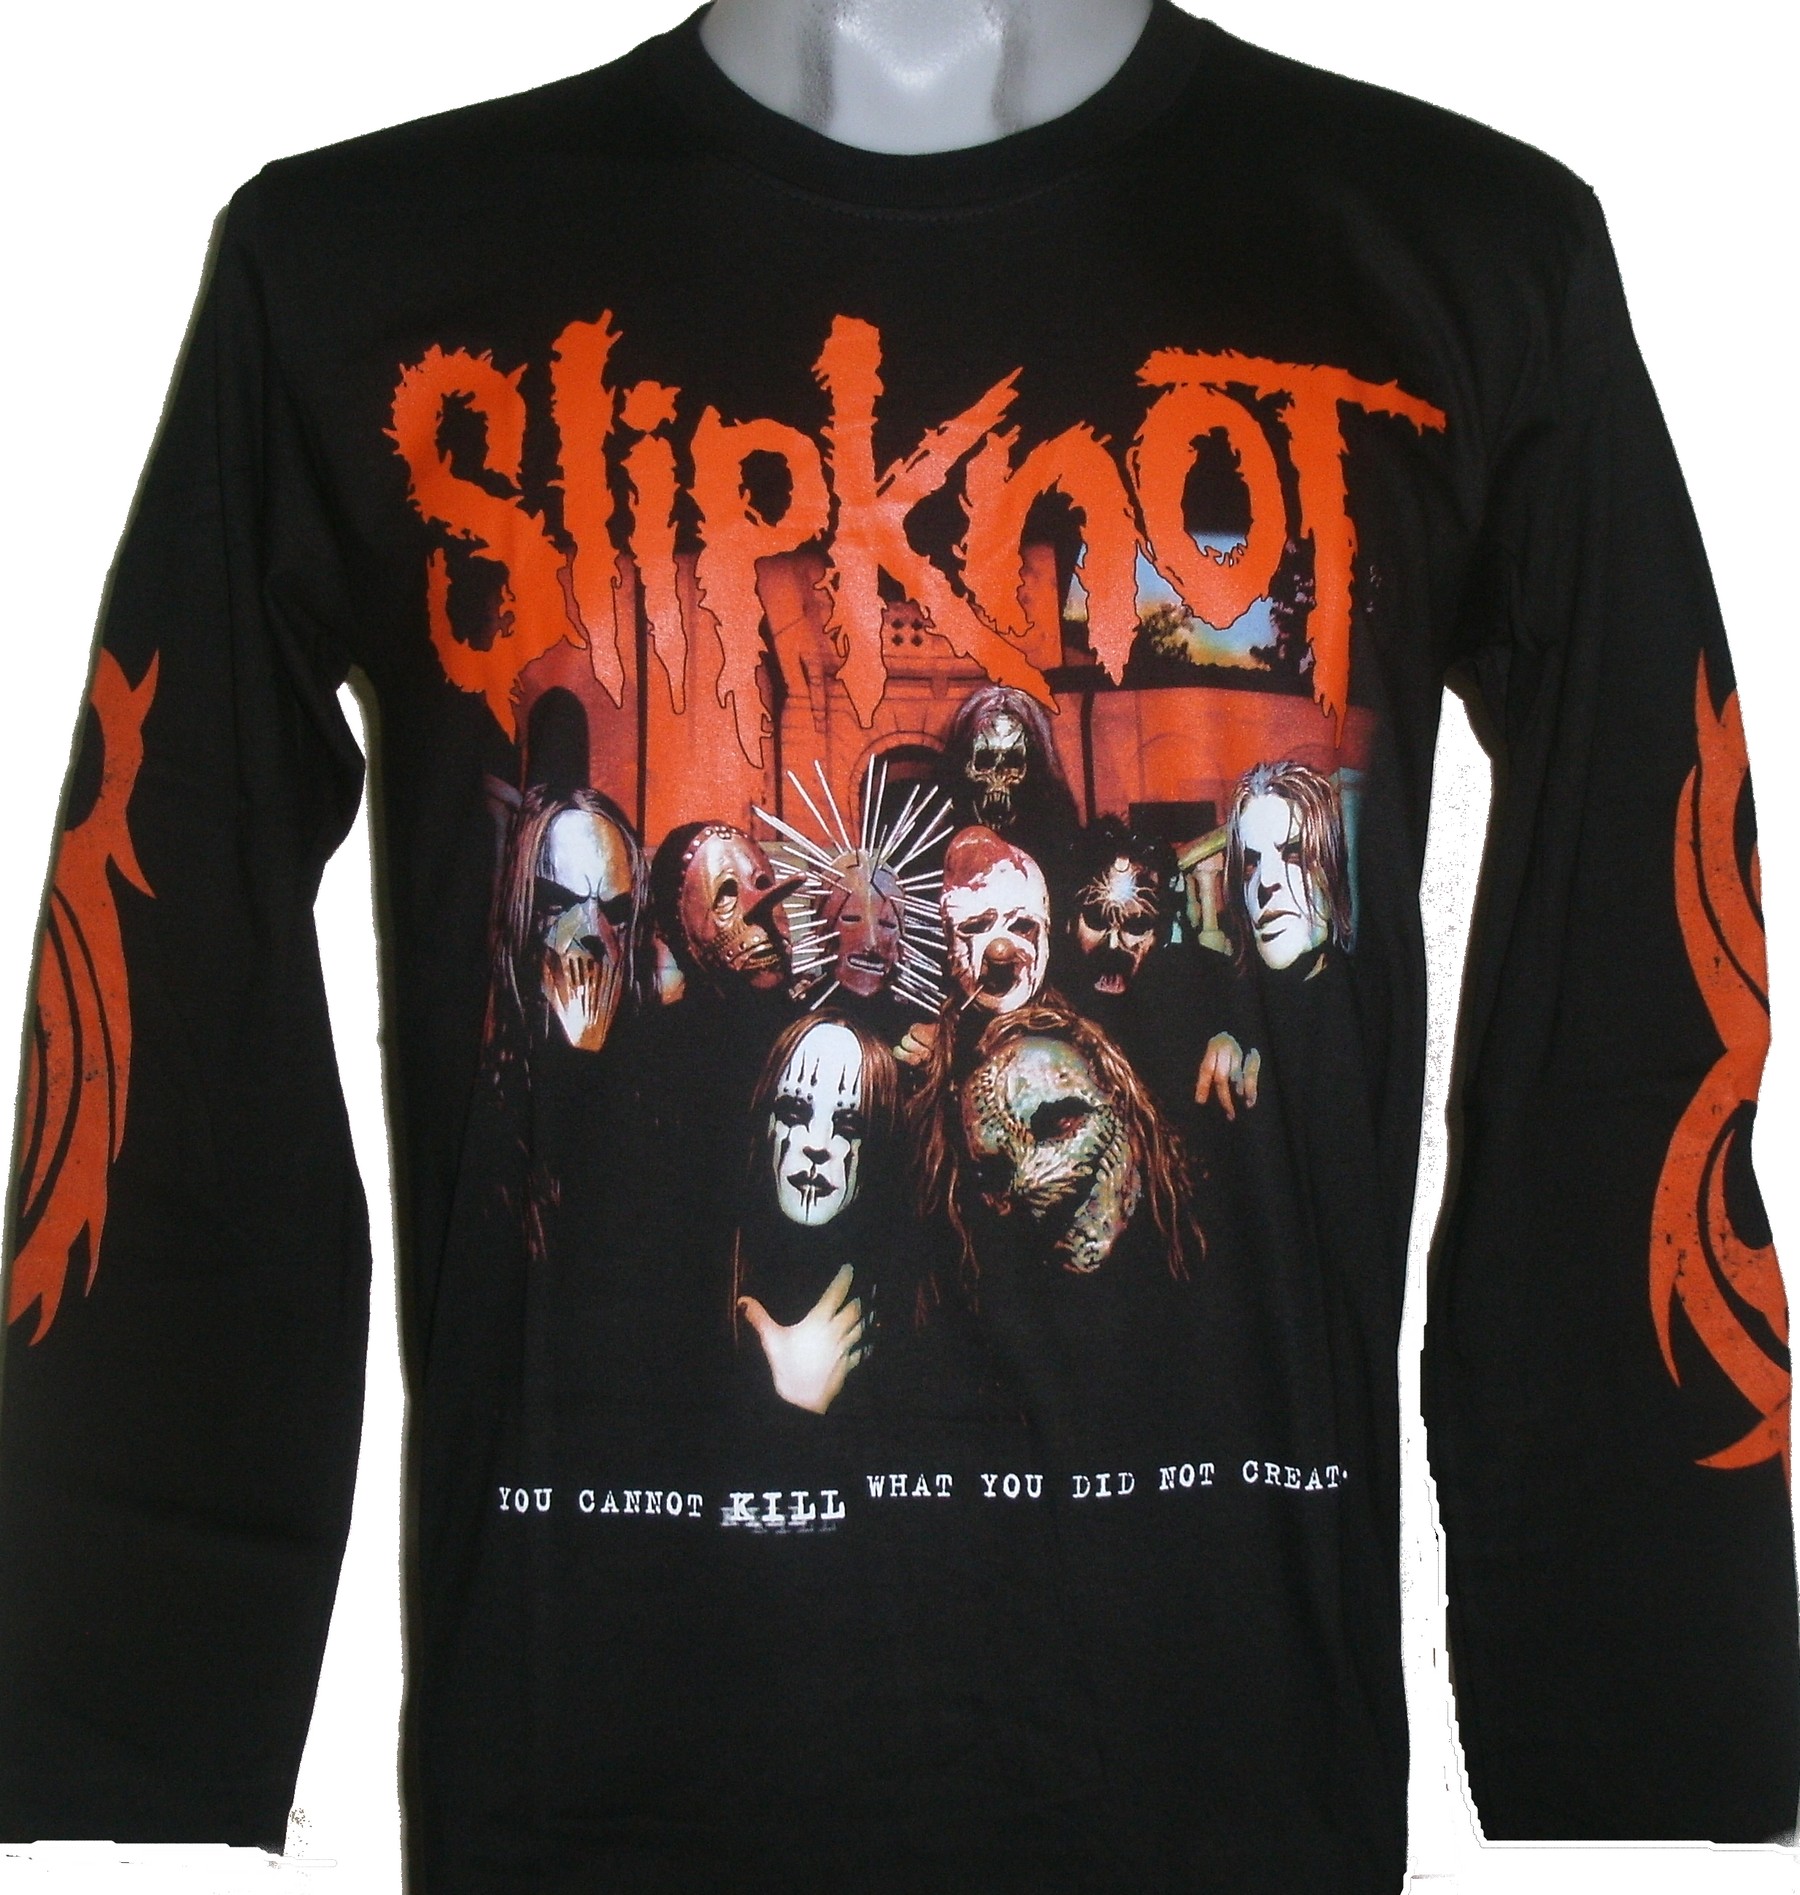 Slipknot long-sleeved t-shirt size M